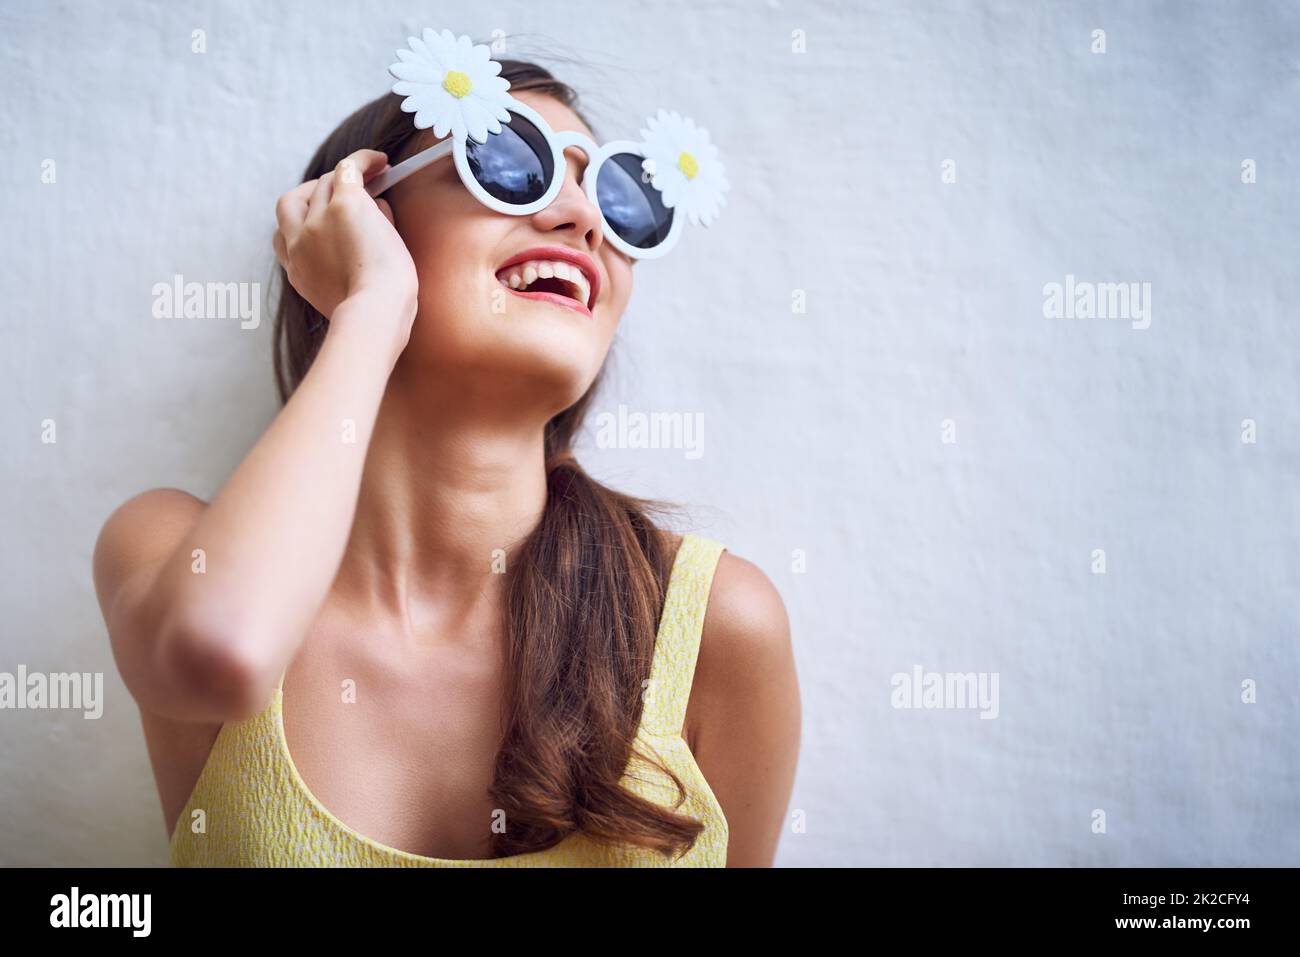 Wohin sie auch geht, die Sonne geht. Studioaufnahme einer fröhlichen jungen Frau, die eine Sonnenbrille trägt und vor einem grauen Hintergrund posiert. Stockfoto